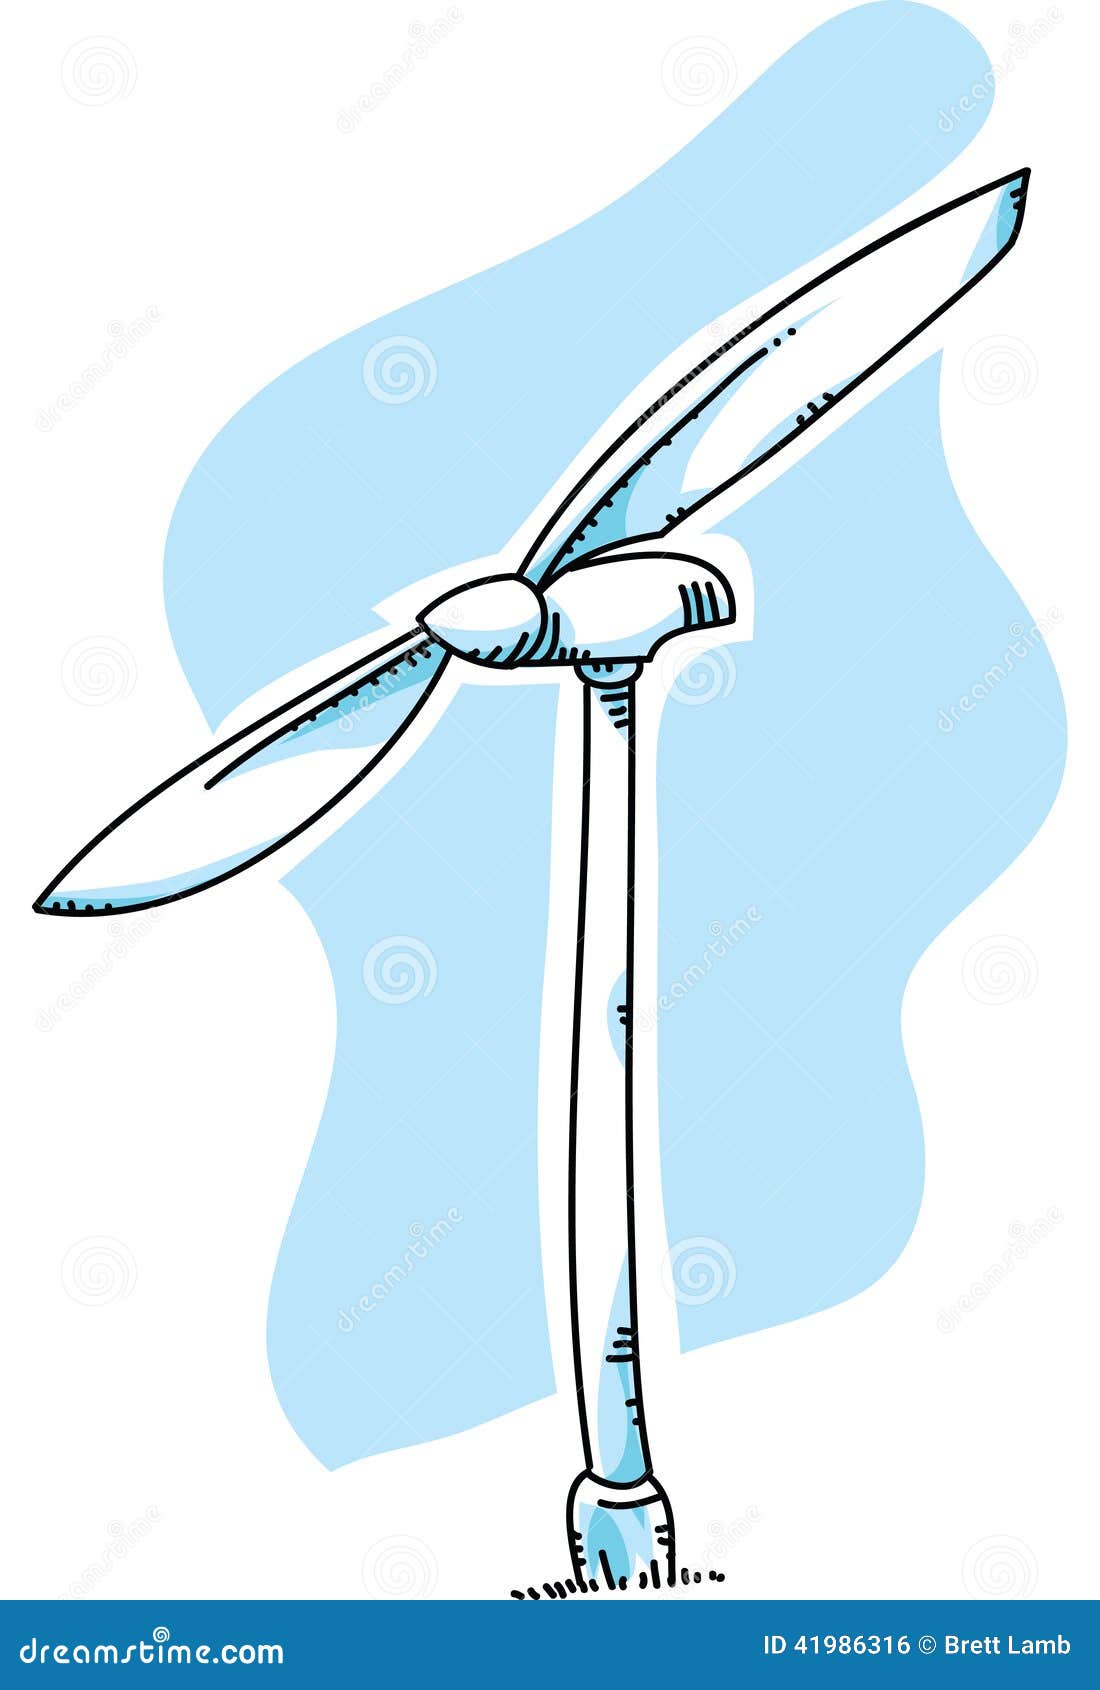 Wind Turbine Stock Illustration - Image: 41986316